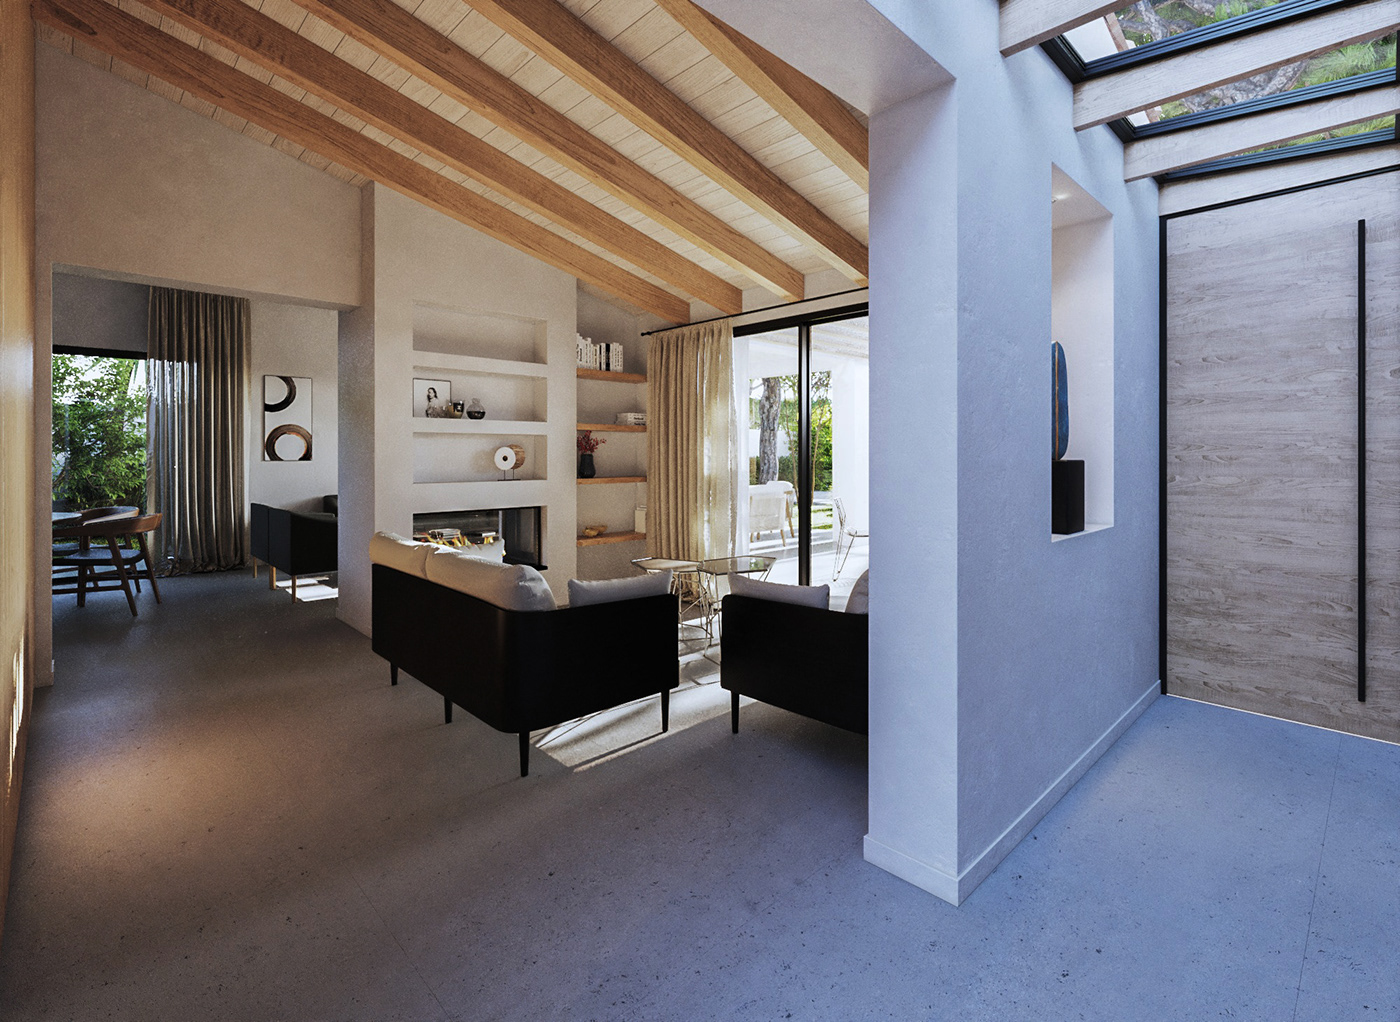 furniture interior design  3ds max vray visualization 3D archviz exterior kitchen reform